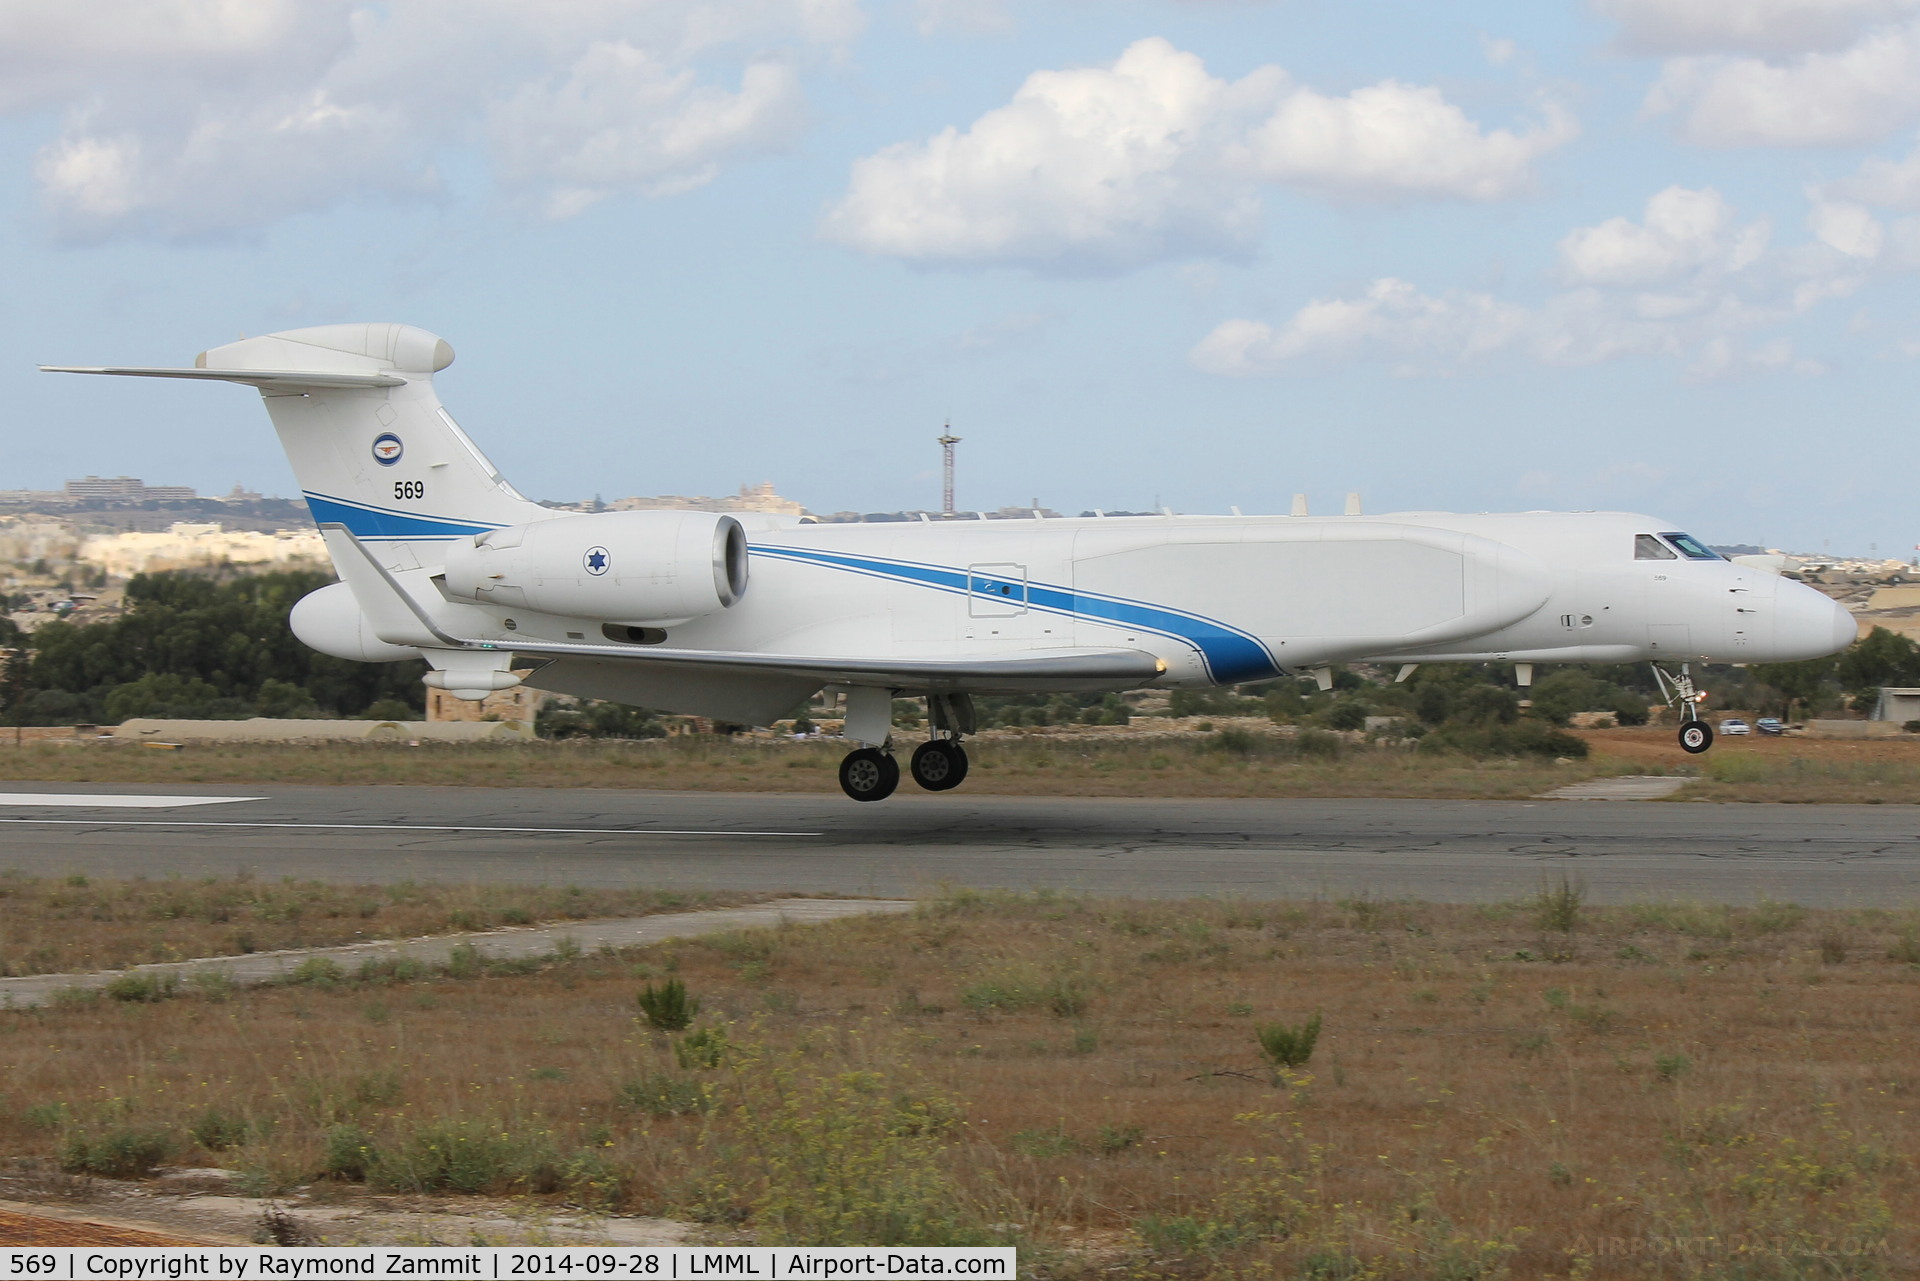 569, 2005 Gulfstream Aerospace GV SP (G550) Eitam C/N 5069, Gulfstream G550 Eitam 569 of Israeli Air Force on final approach to RW05 in Malta.